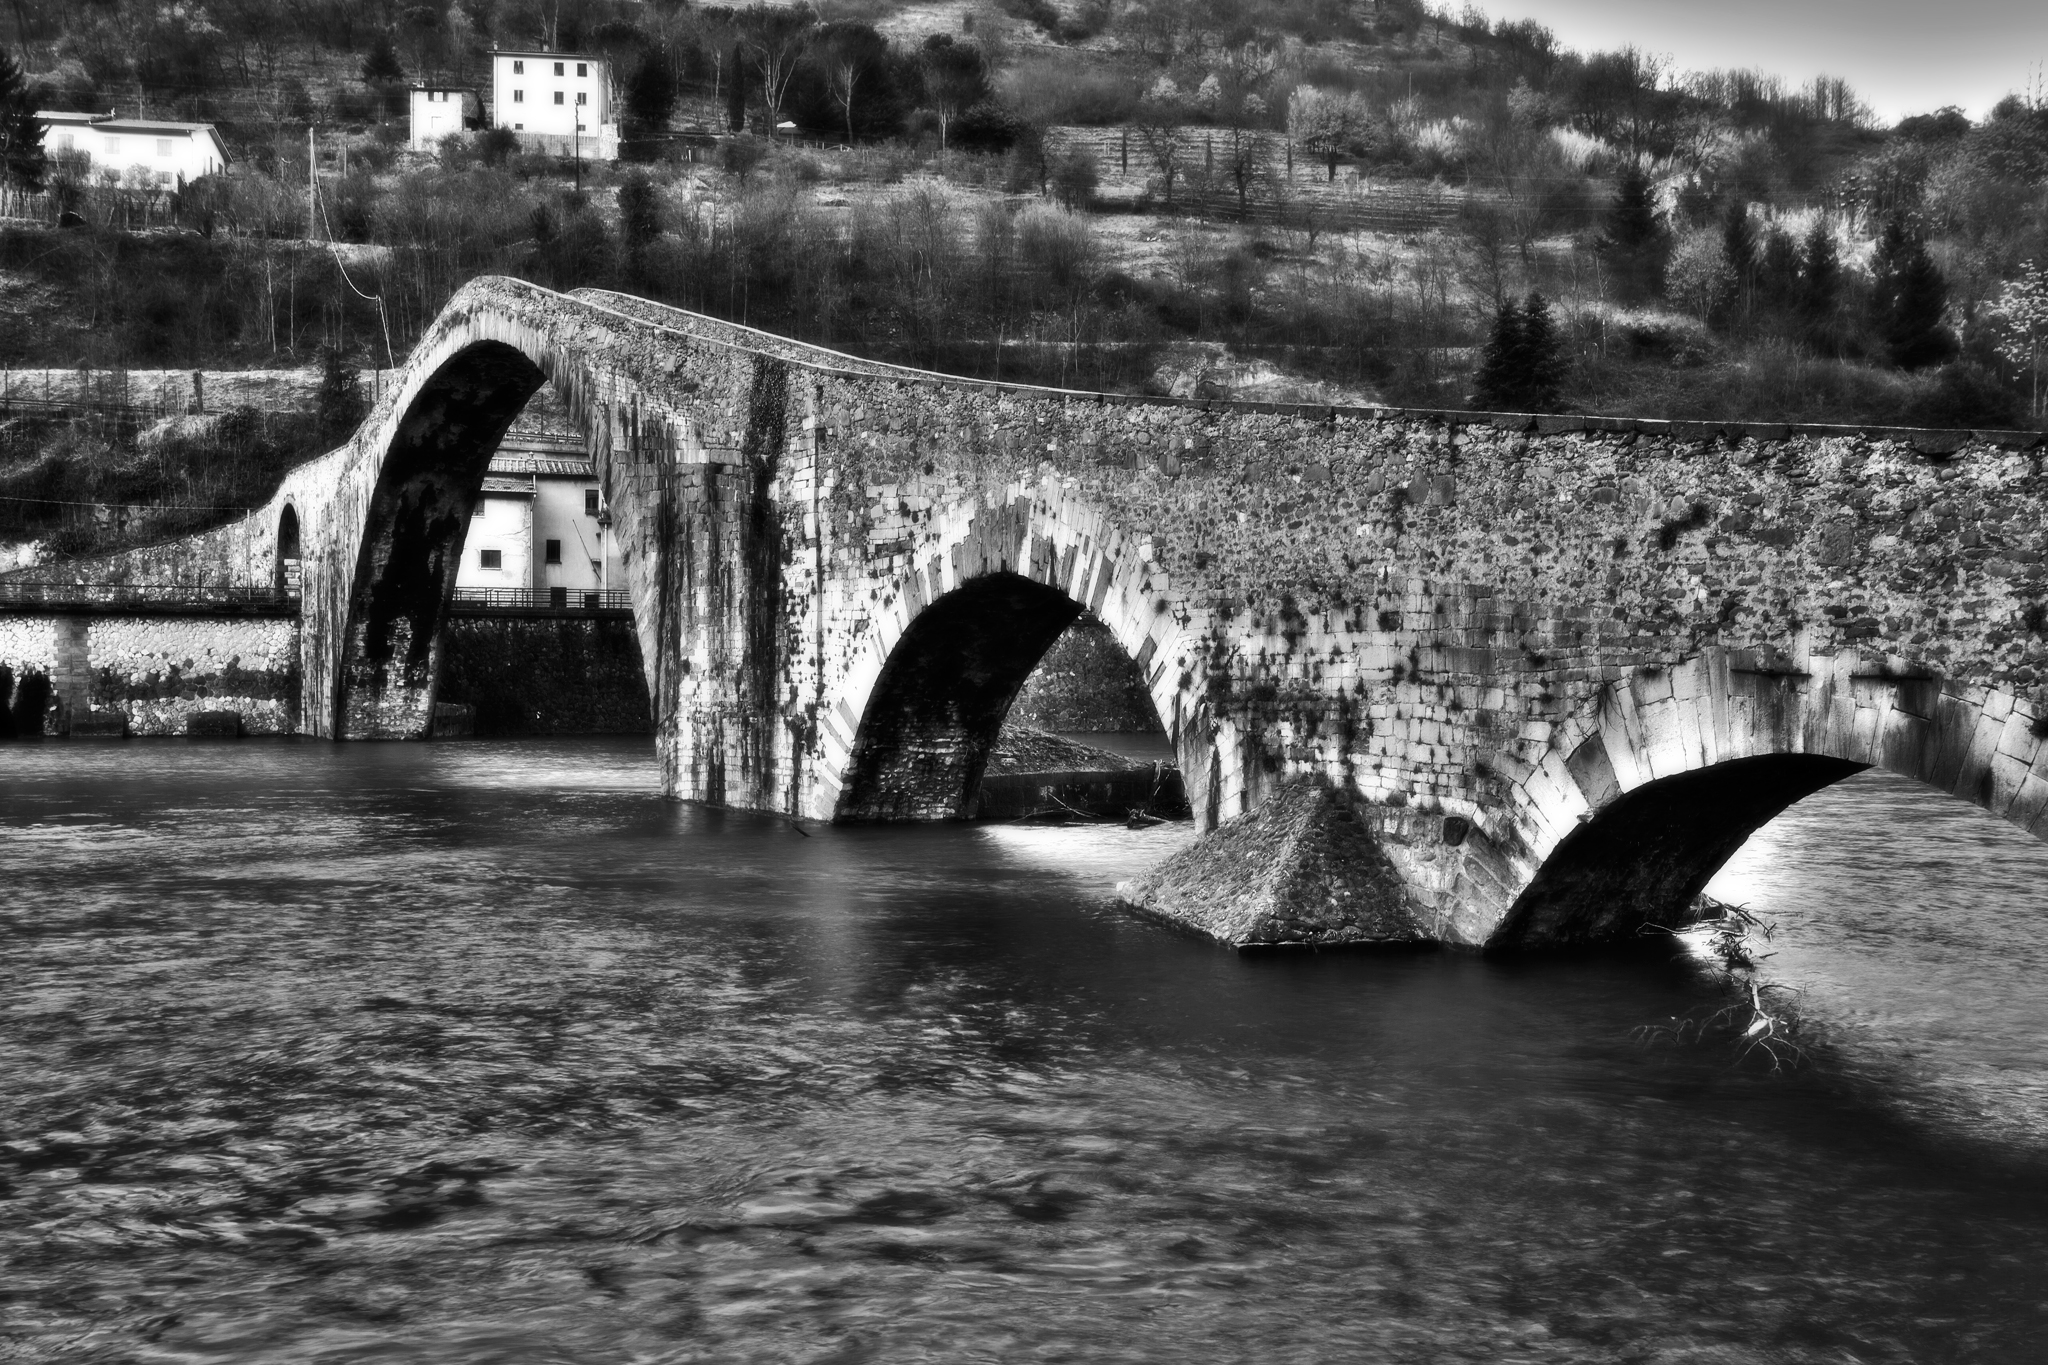 Ponte della Maddalena (Devil's Bridge)...